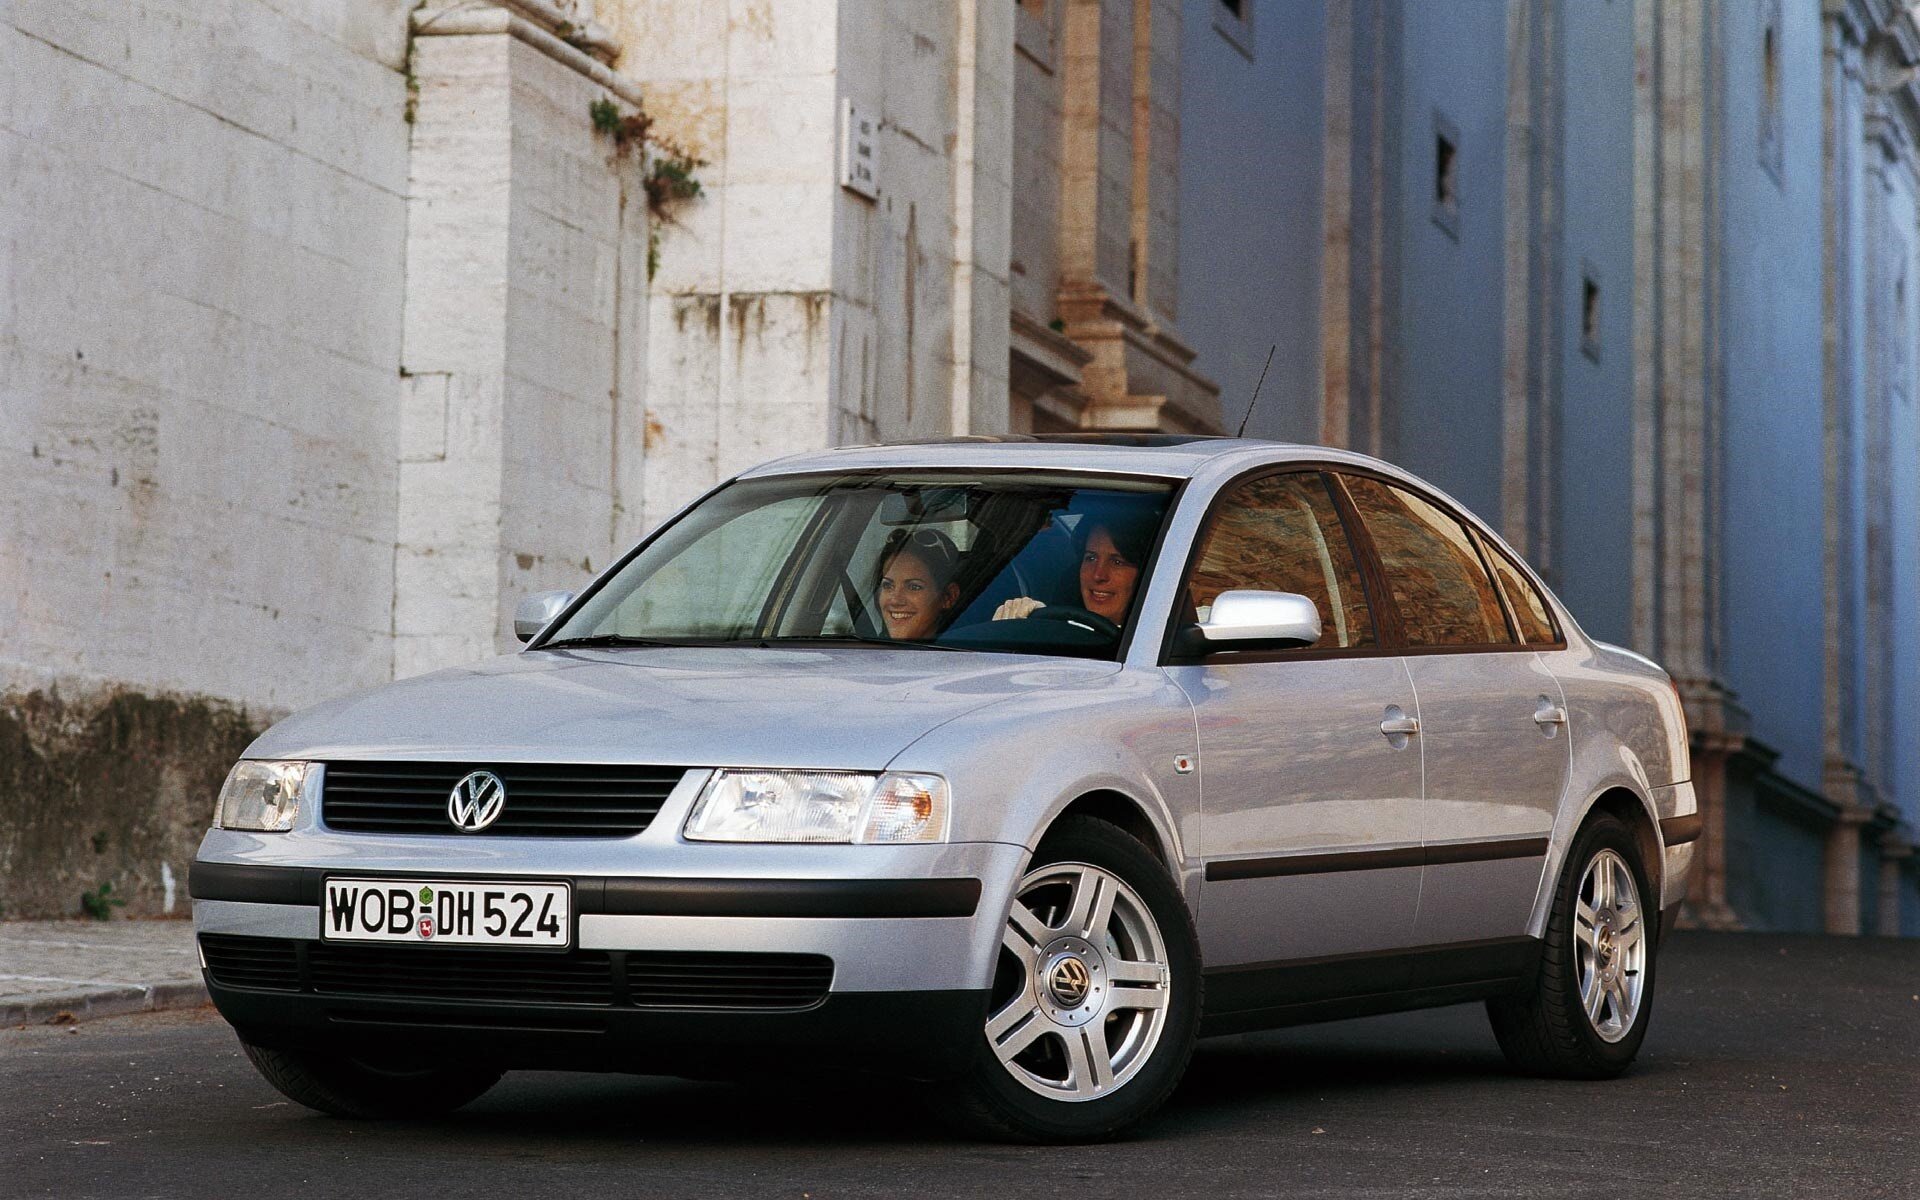 Купить фольксваген пассат б5 в москве. Volkswagen Passat b5 седан. Volkswagen Пассат б5. Фольксваген Пассат седан 2000. Фольксваген Пассат б5.5.